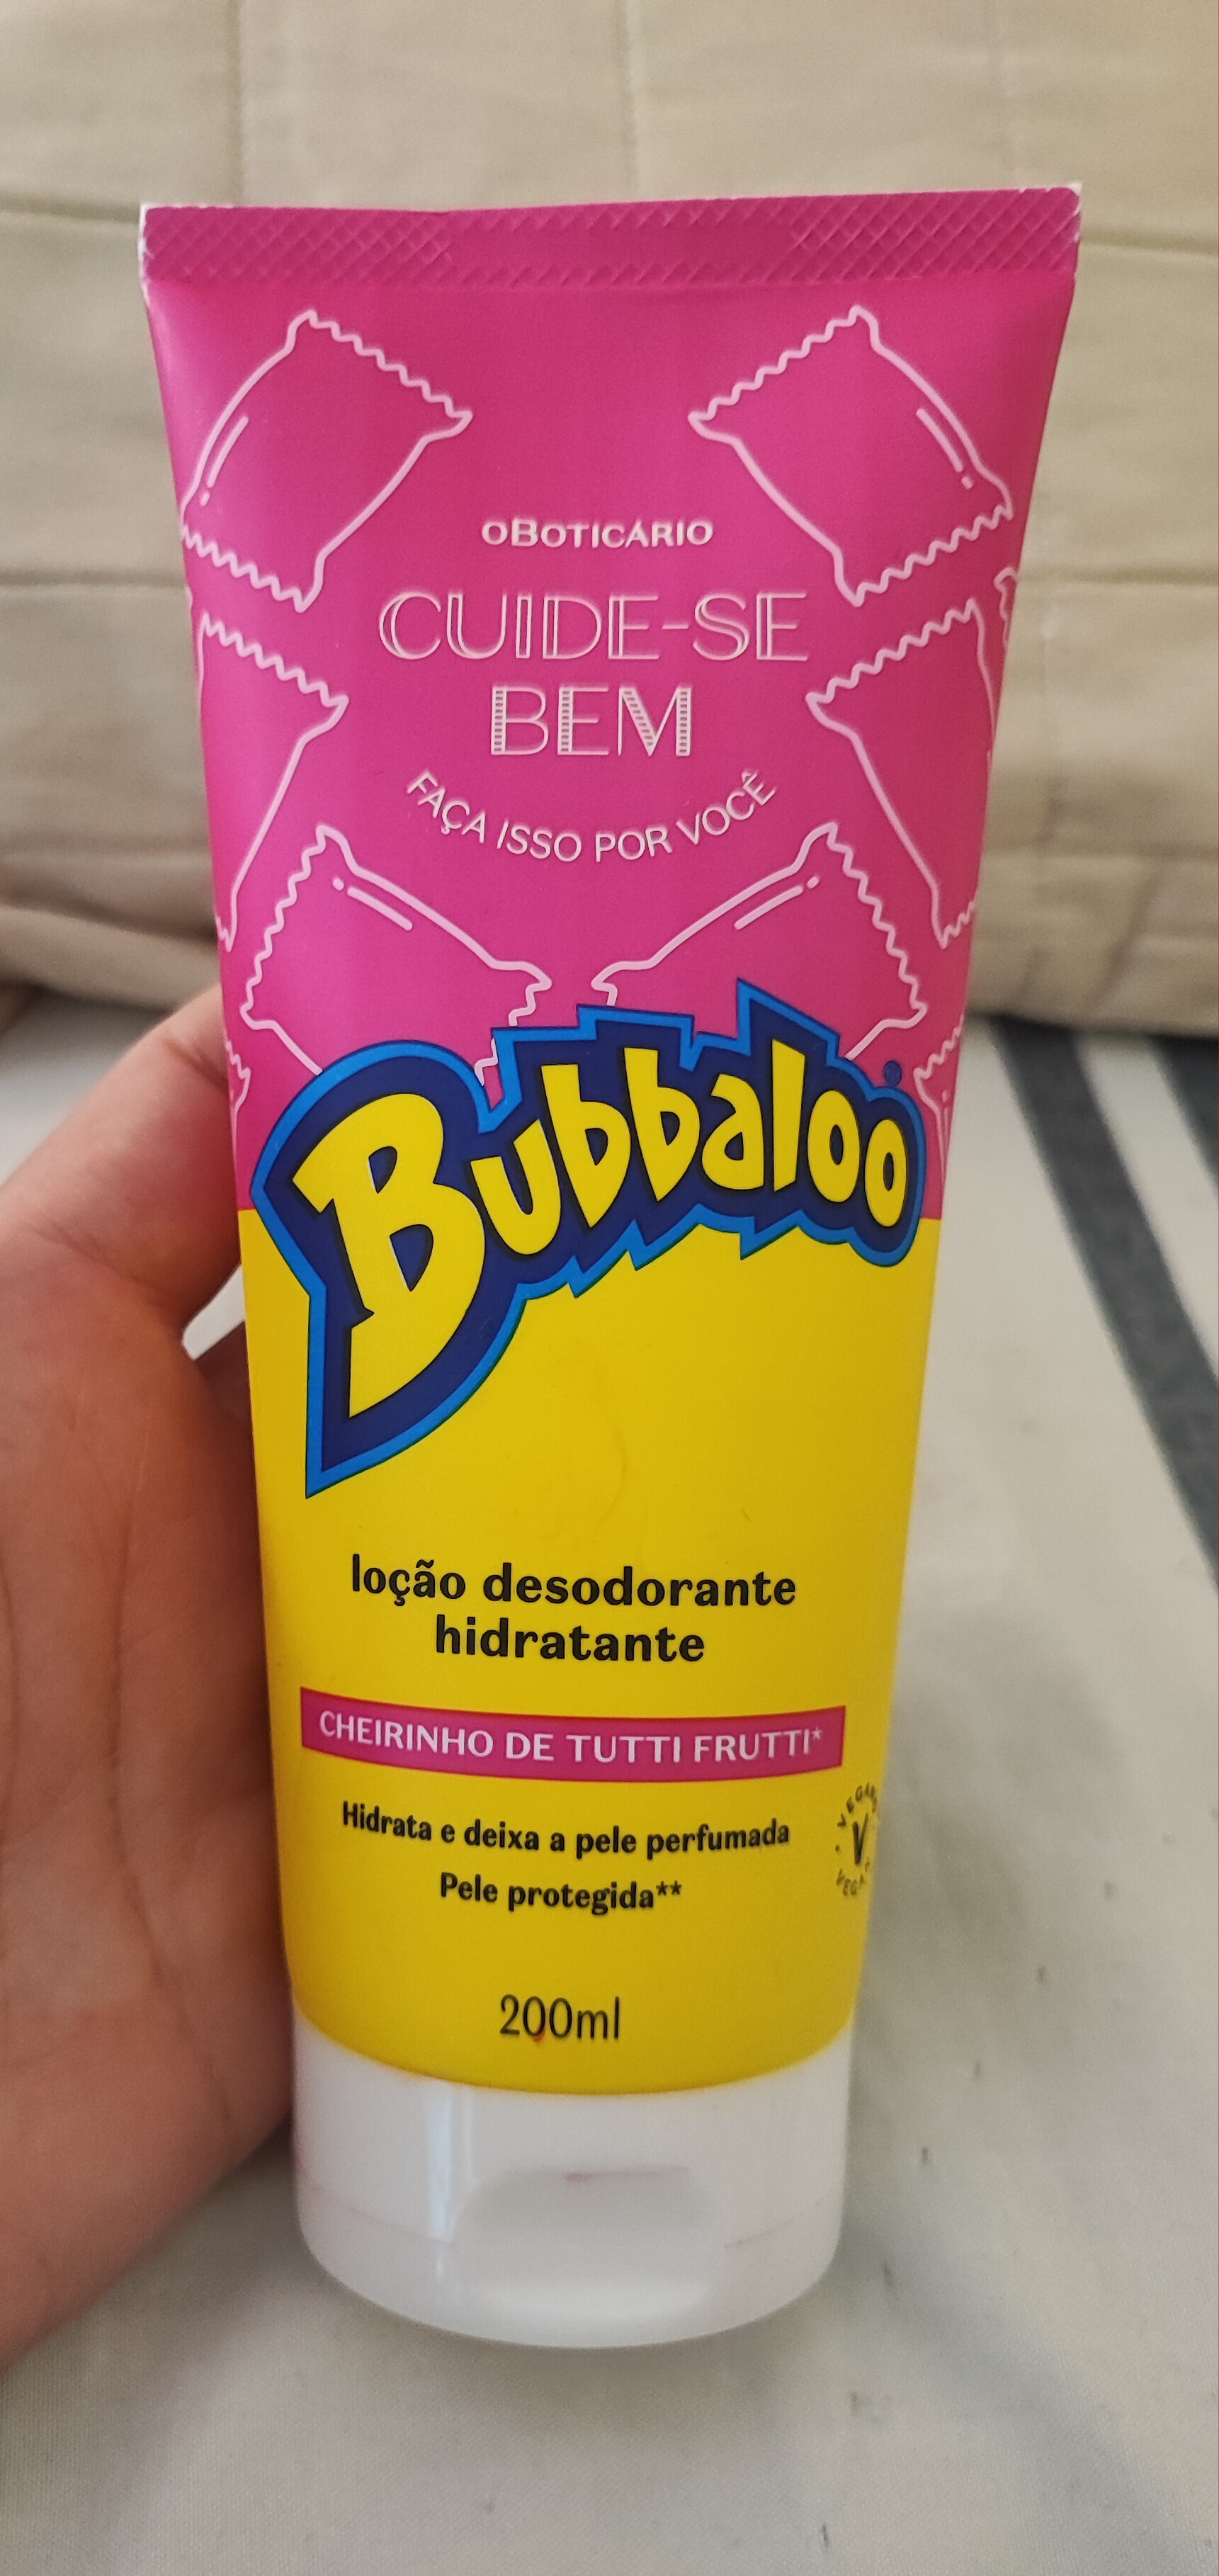 loção desodorante hidratante babbaloo - Produit - pt